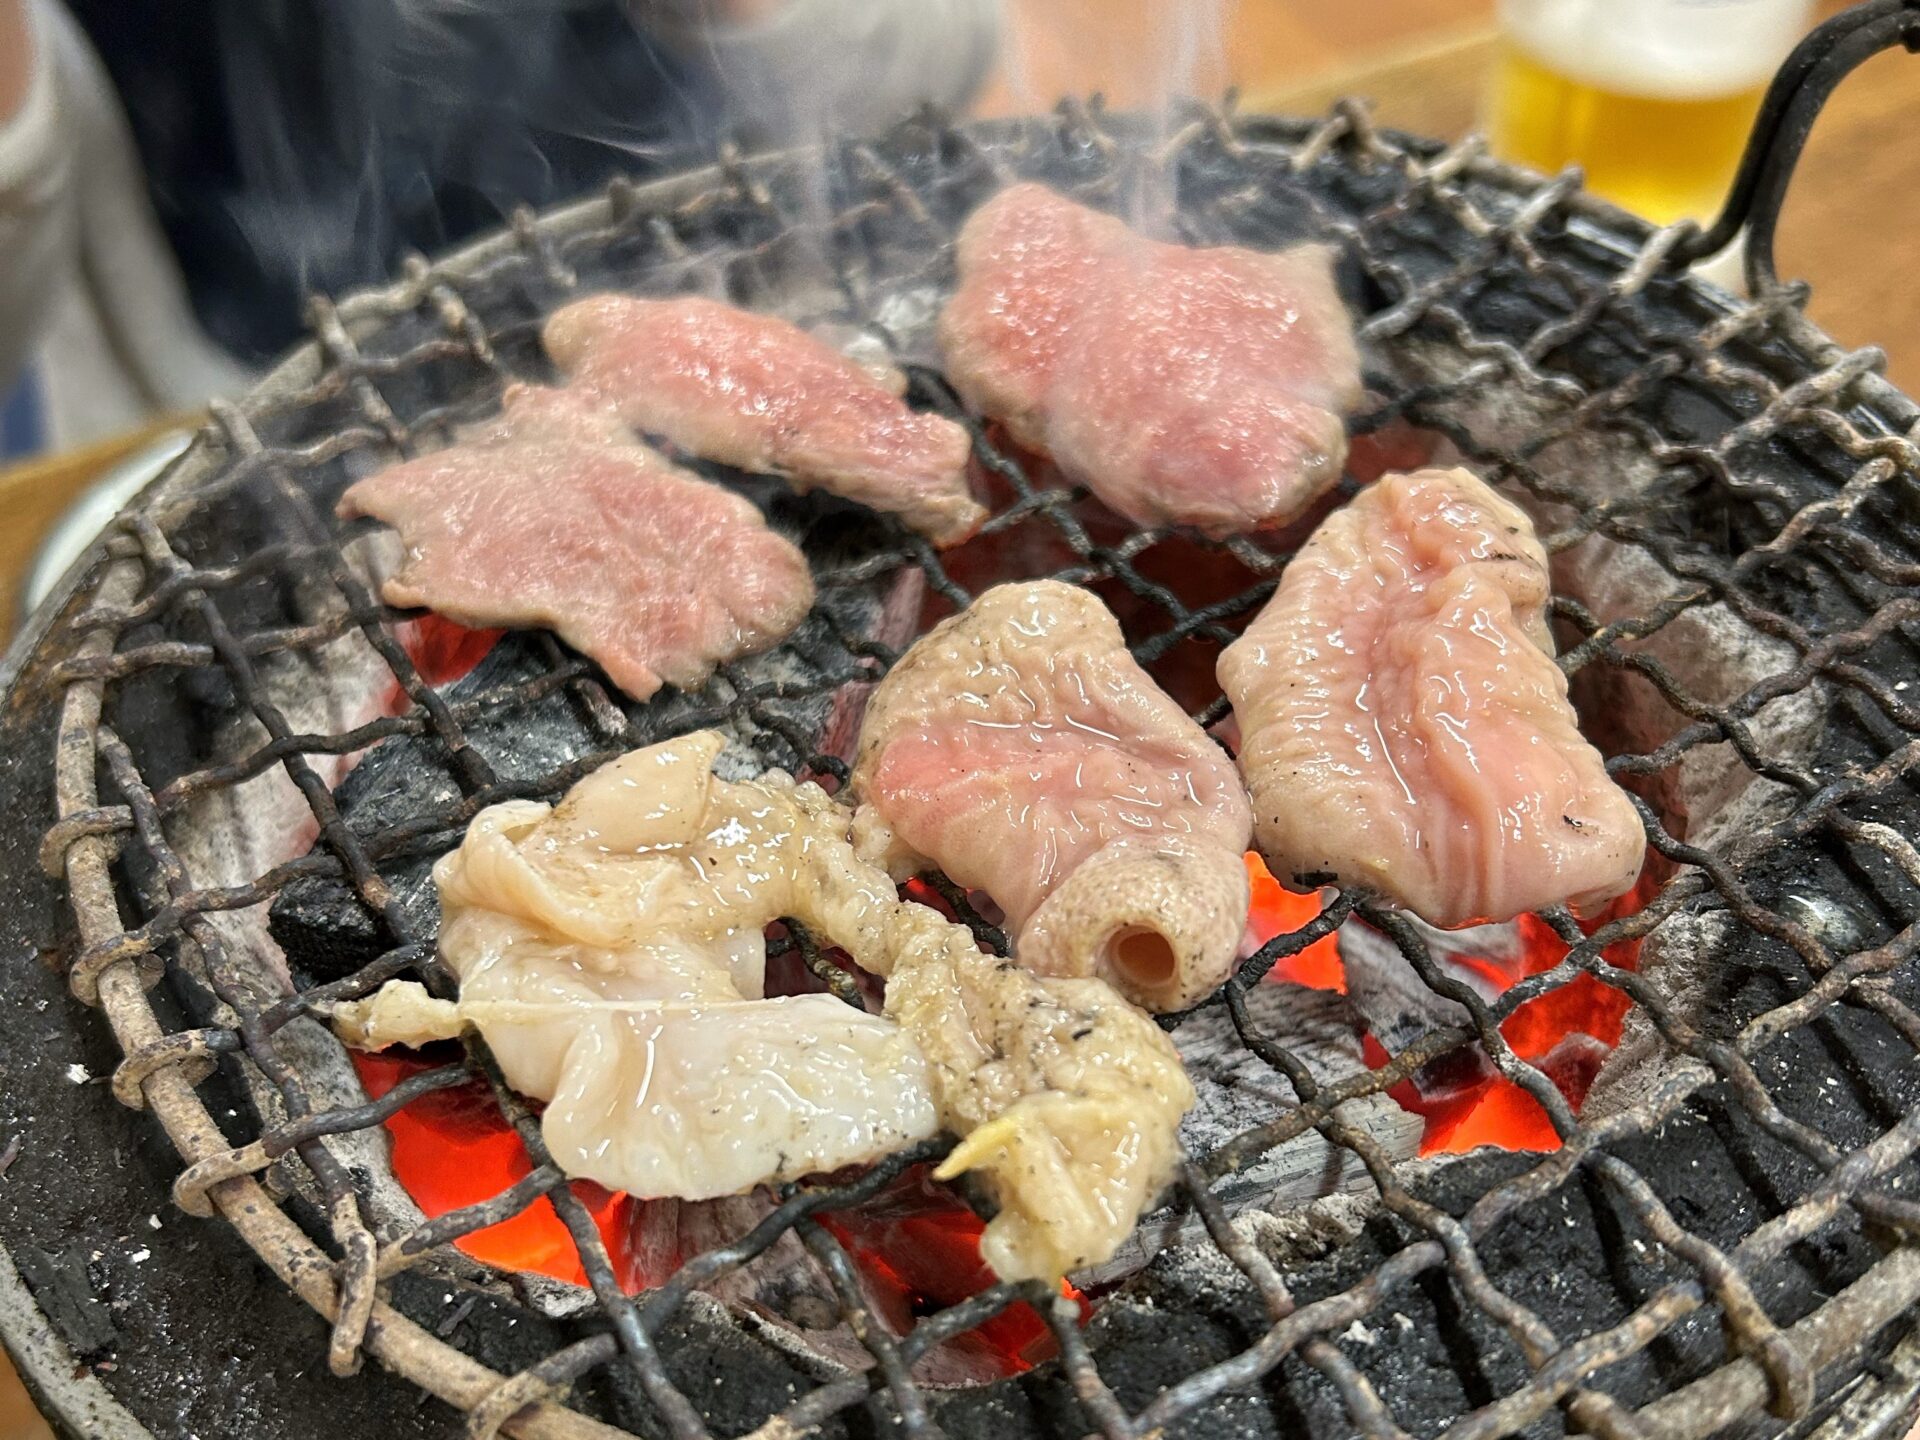 「元祖 京城屋」のホルモン焼きは、七輪の炭火焼肉だ